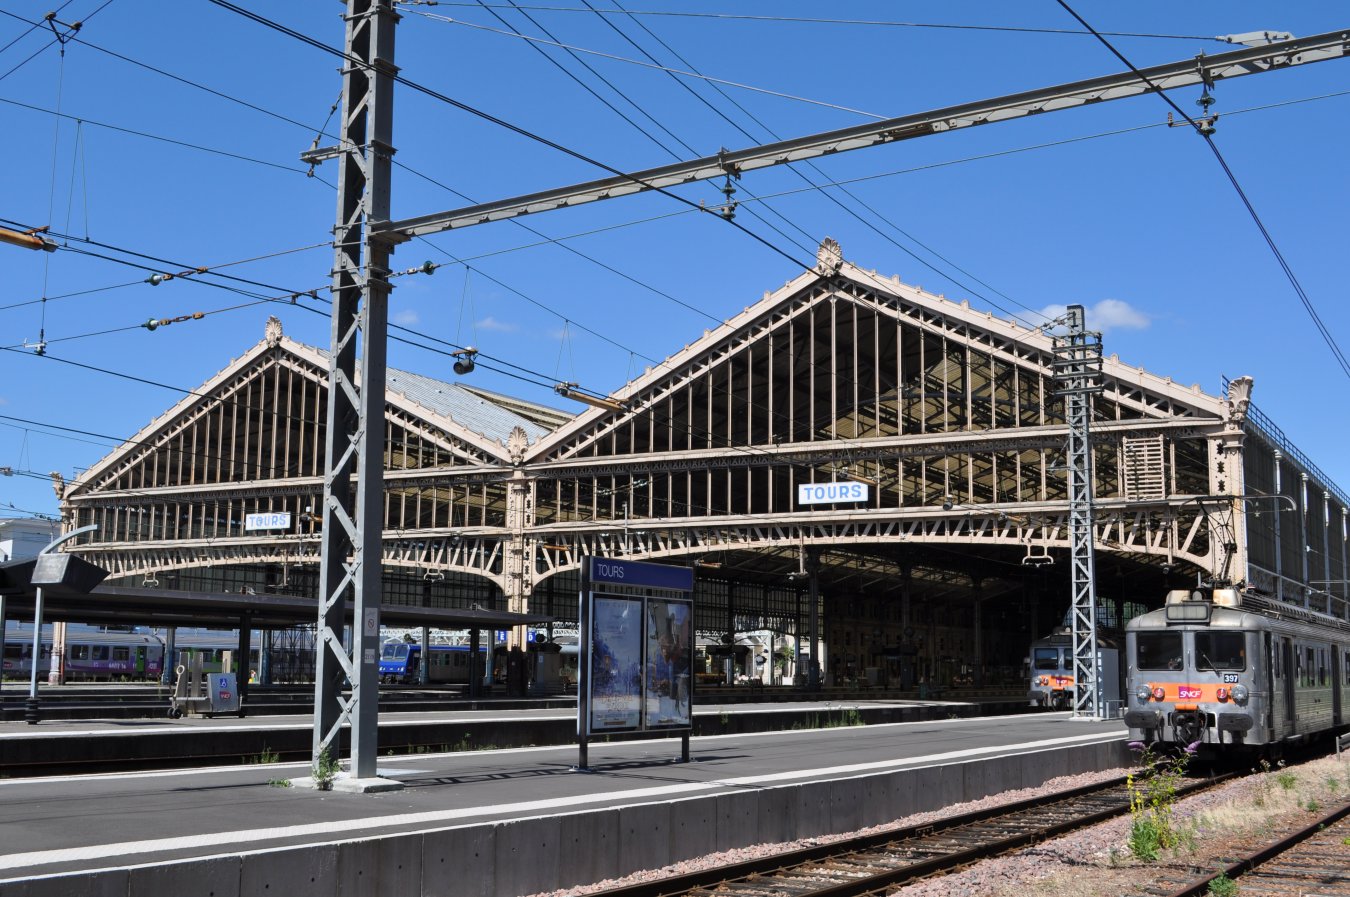 Gare_de_Tours_-_Vue_d'ensemble_des_quais.jpg